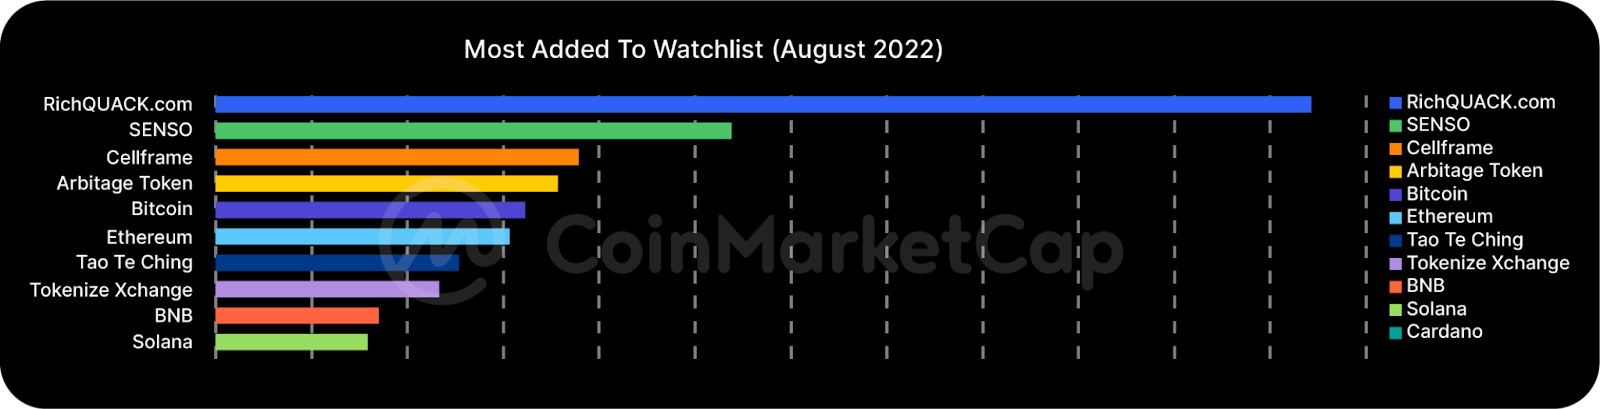 CoinMarketCap WatchList 